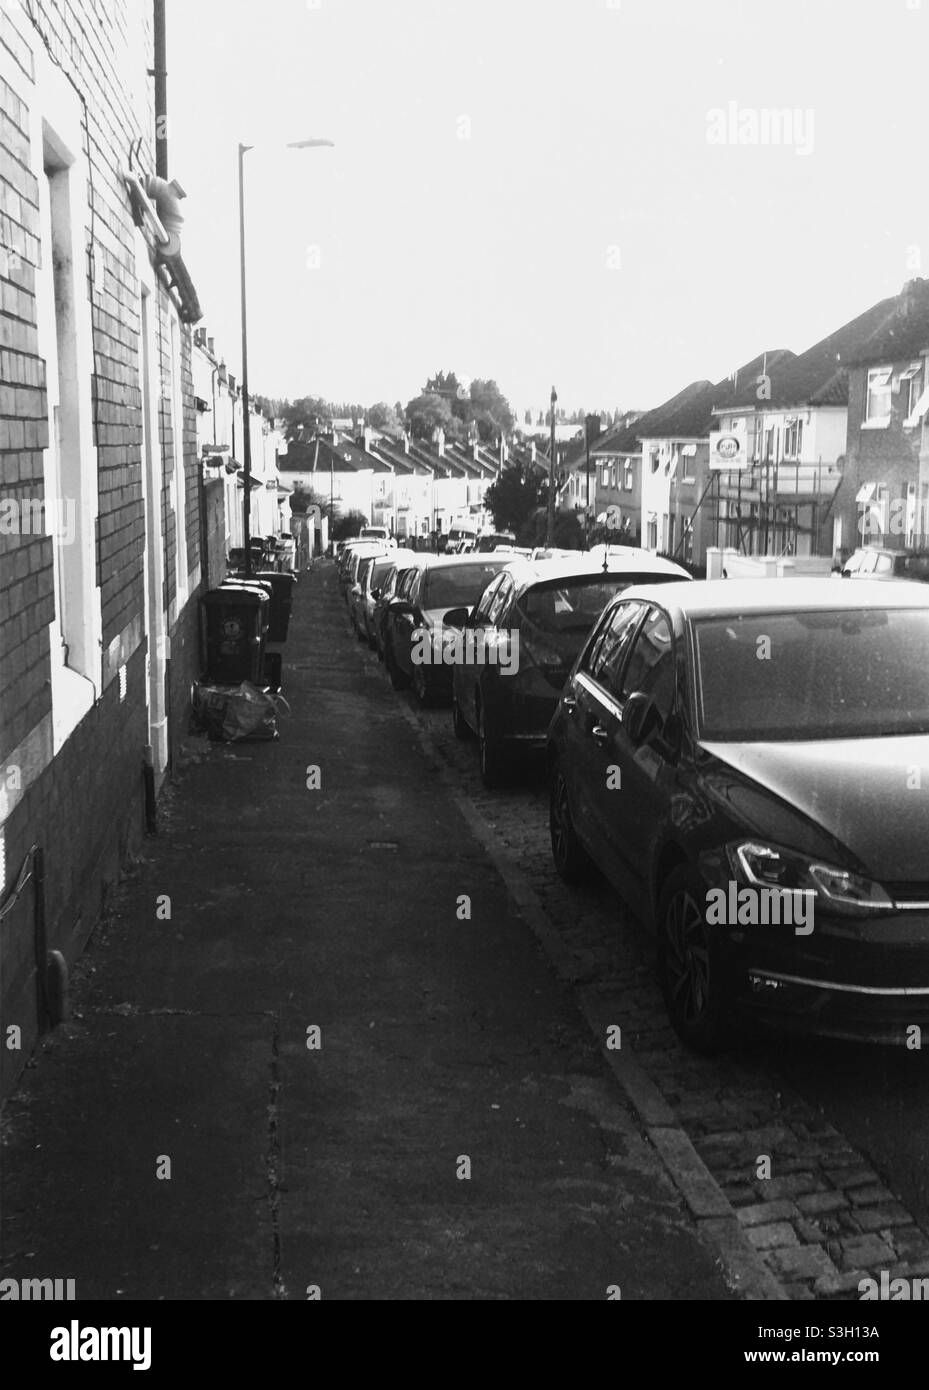 Une rue résidentielle dans la ville de Bristol, Angleterre, Royaume-Uni, en juillet 2021. Photo en noir et blanc montrant des maisons mitoyennes et des voitures garées Banque D'Images